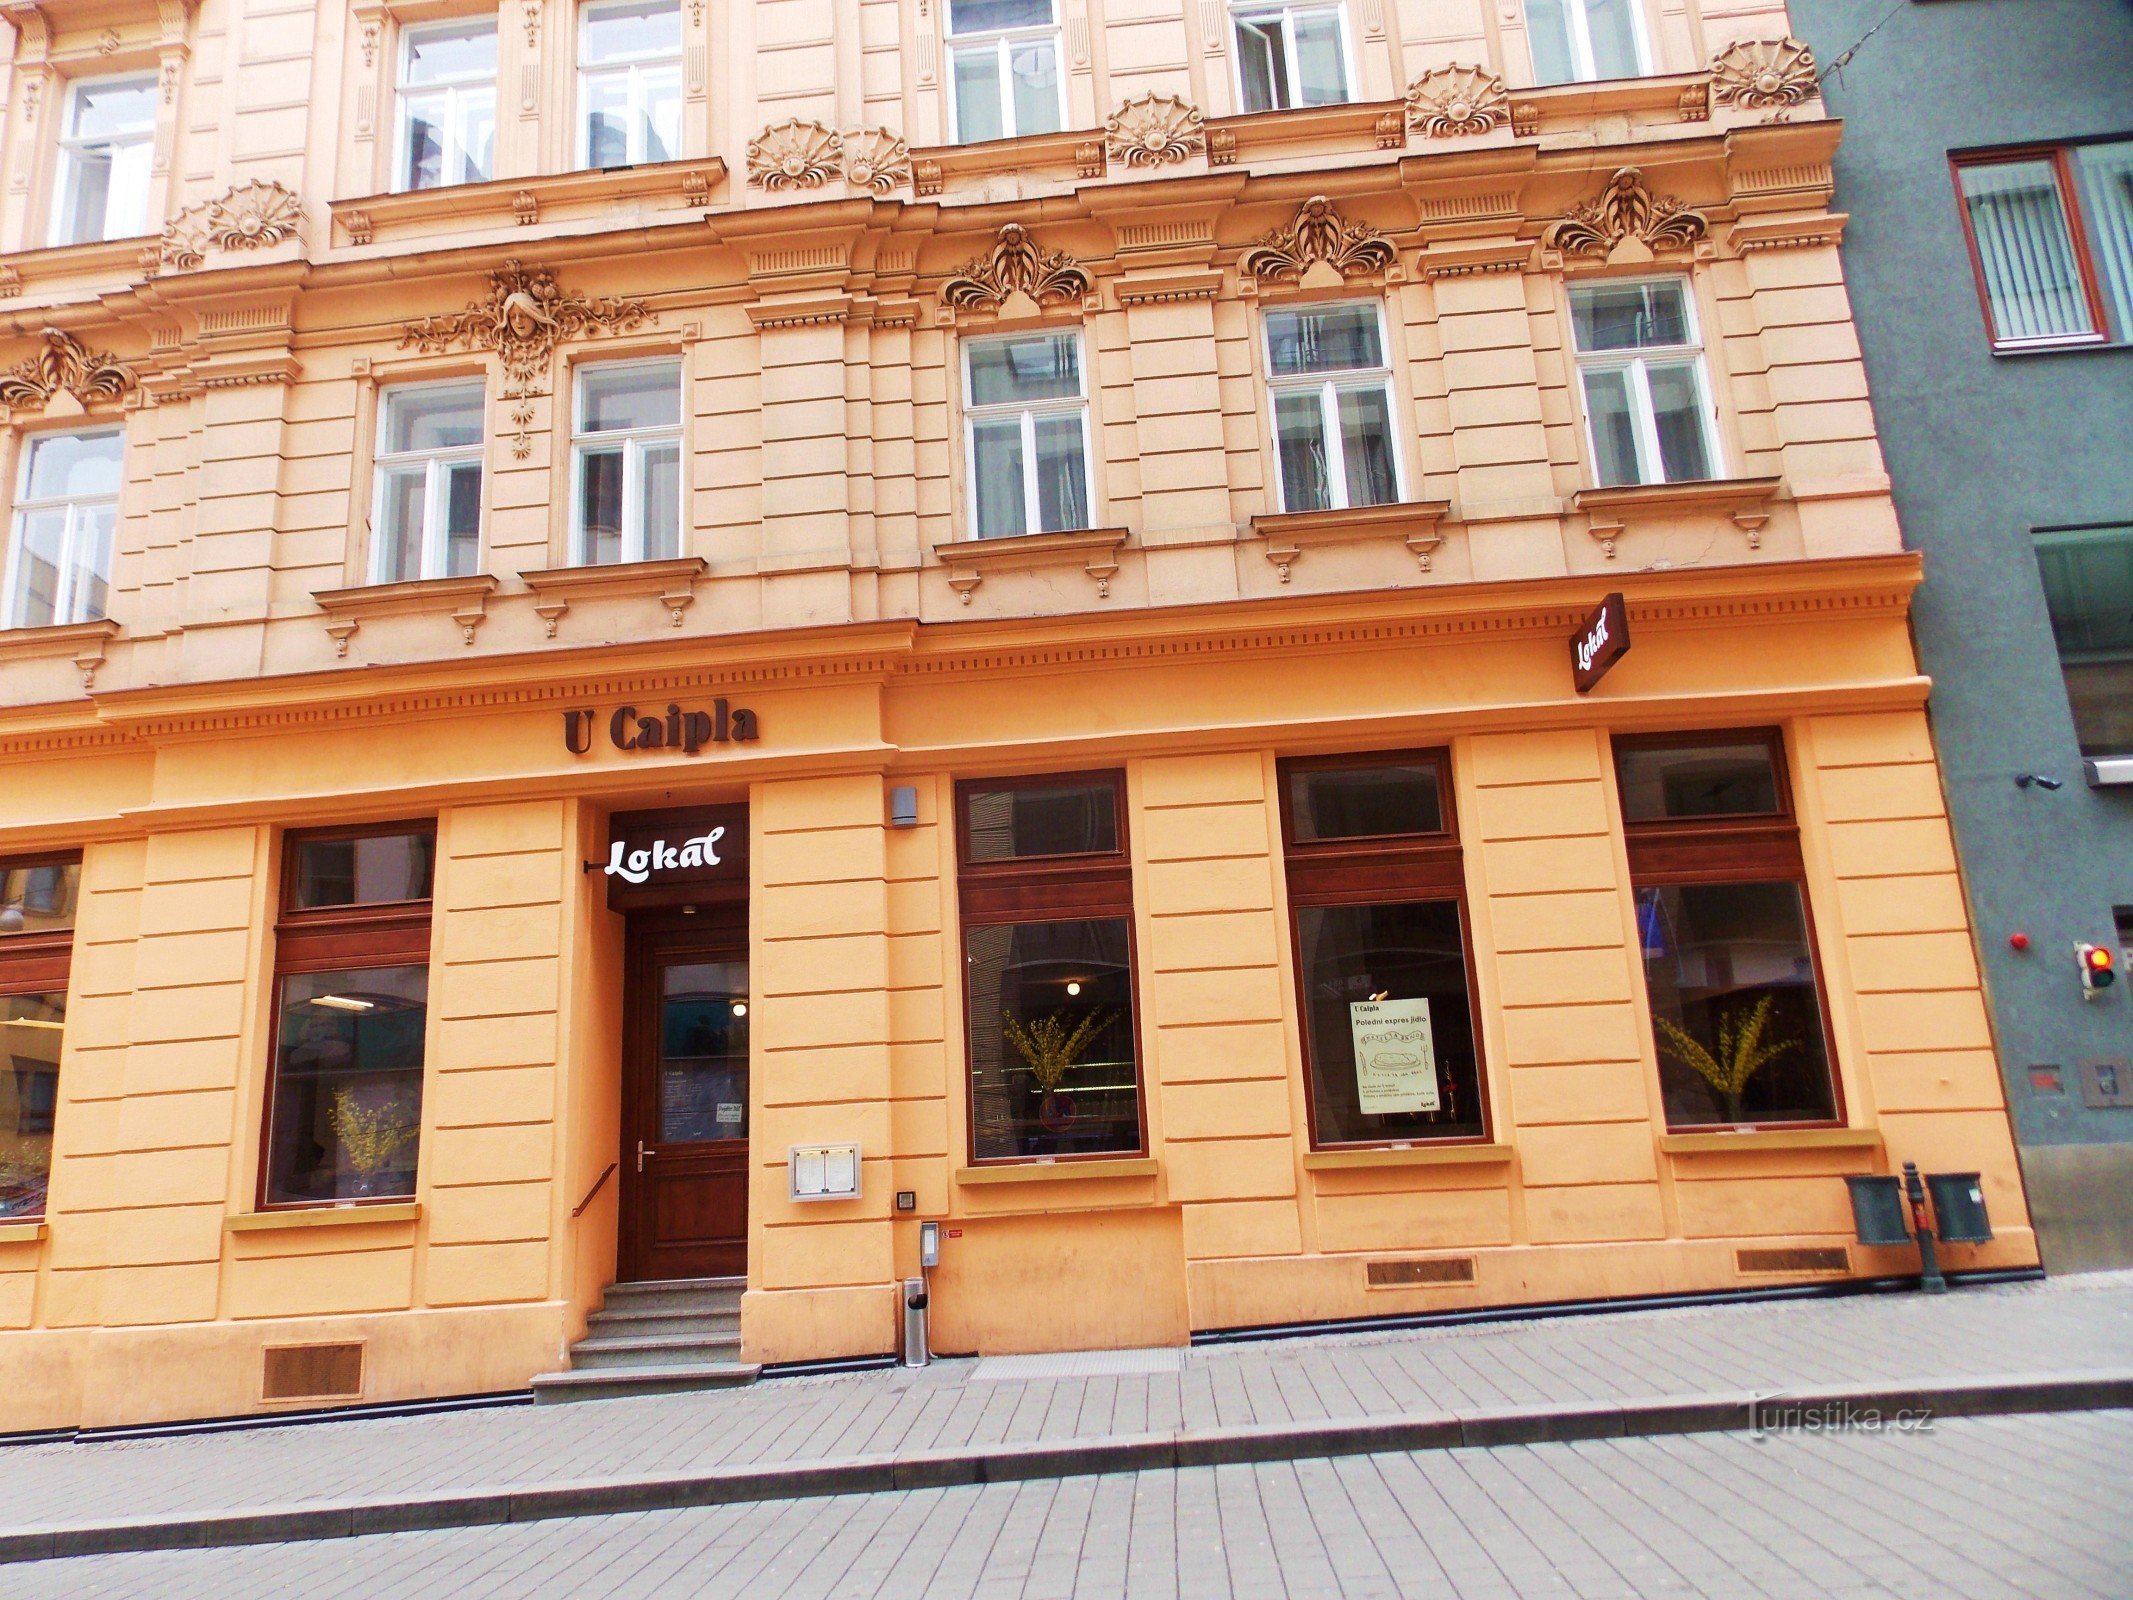 Restaurante - Local perto de Caipla no centro de Brno